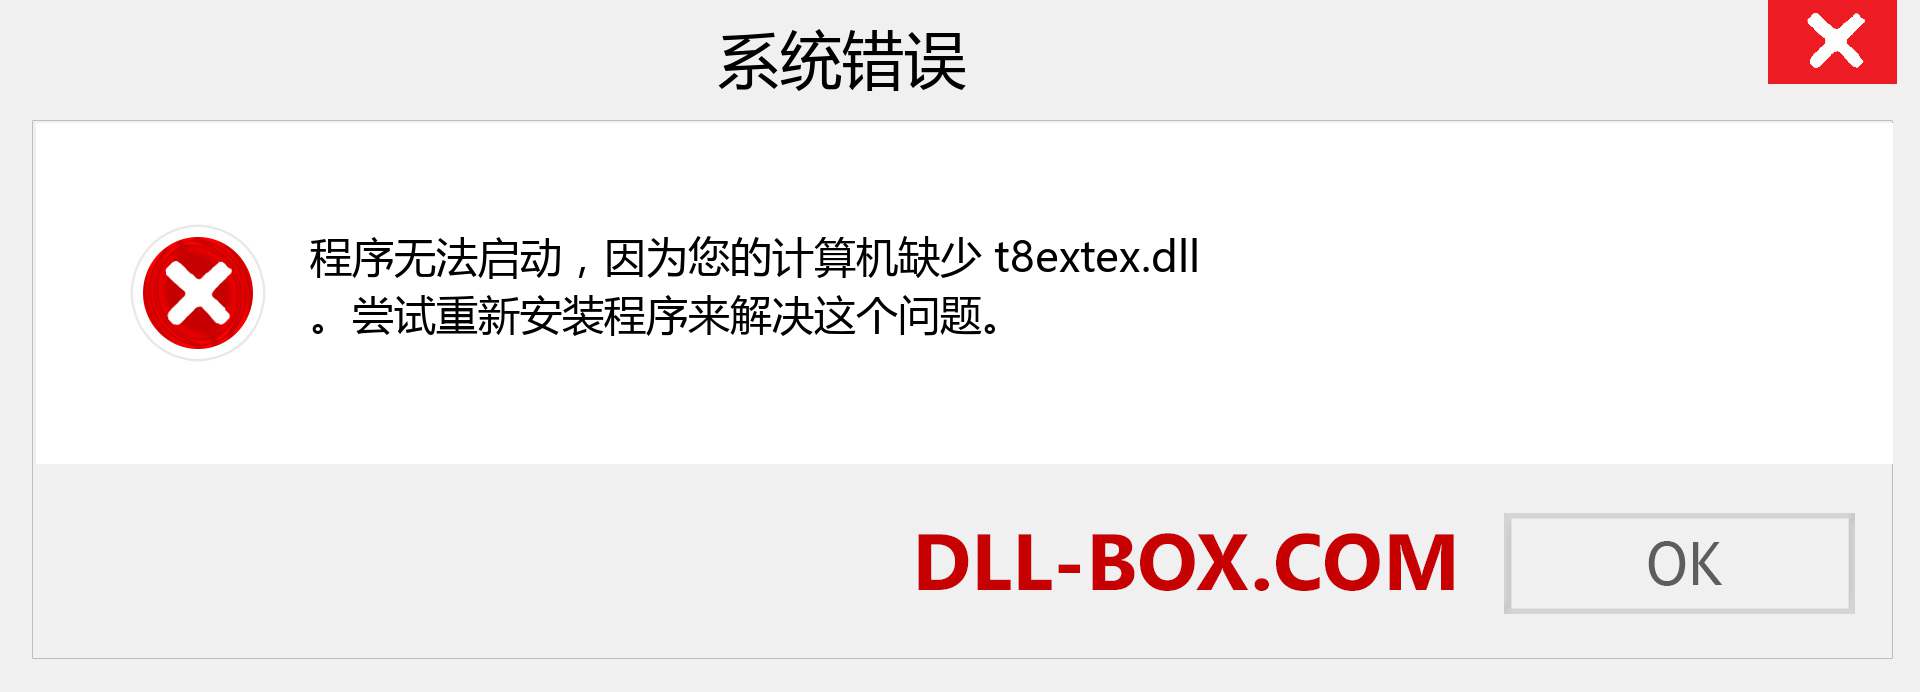 t8extex.dll 文件丢失？。 适用于 Windows 7、8、10 的下载 - 修复 Windows、照片、图像上的 t8extex dll 丢失错误